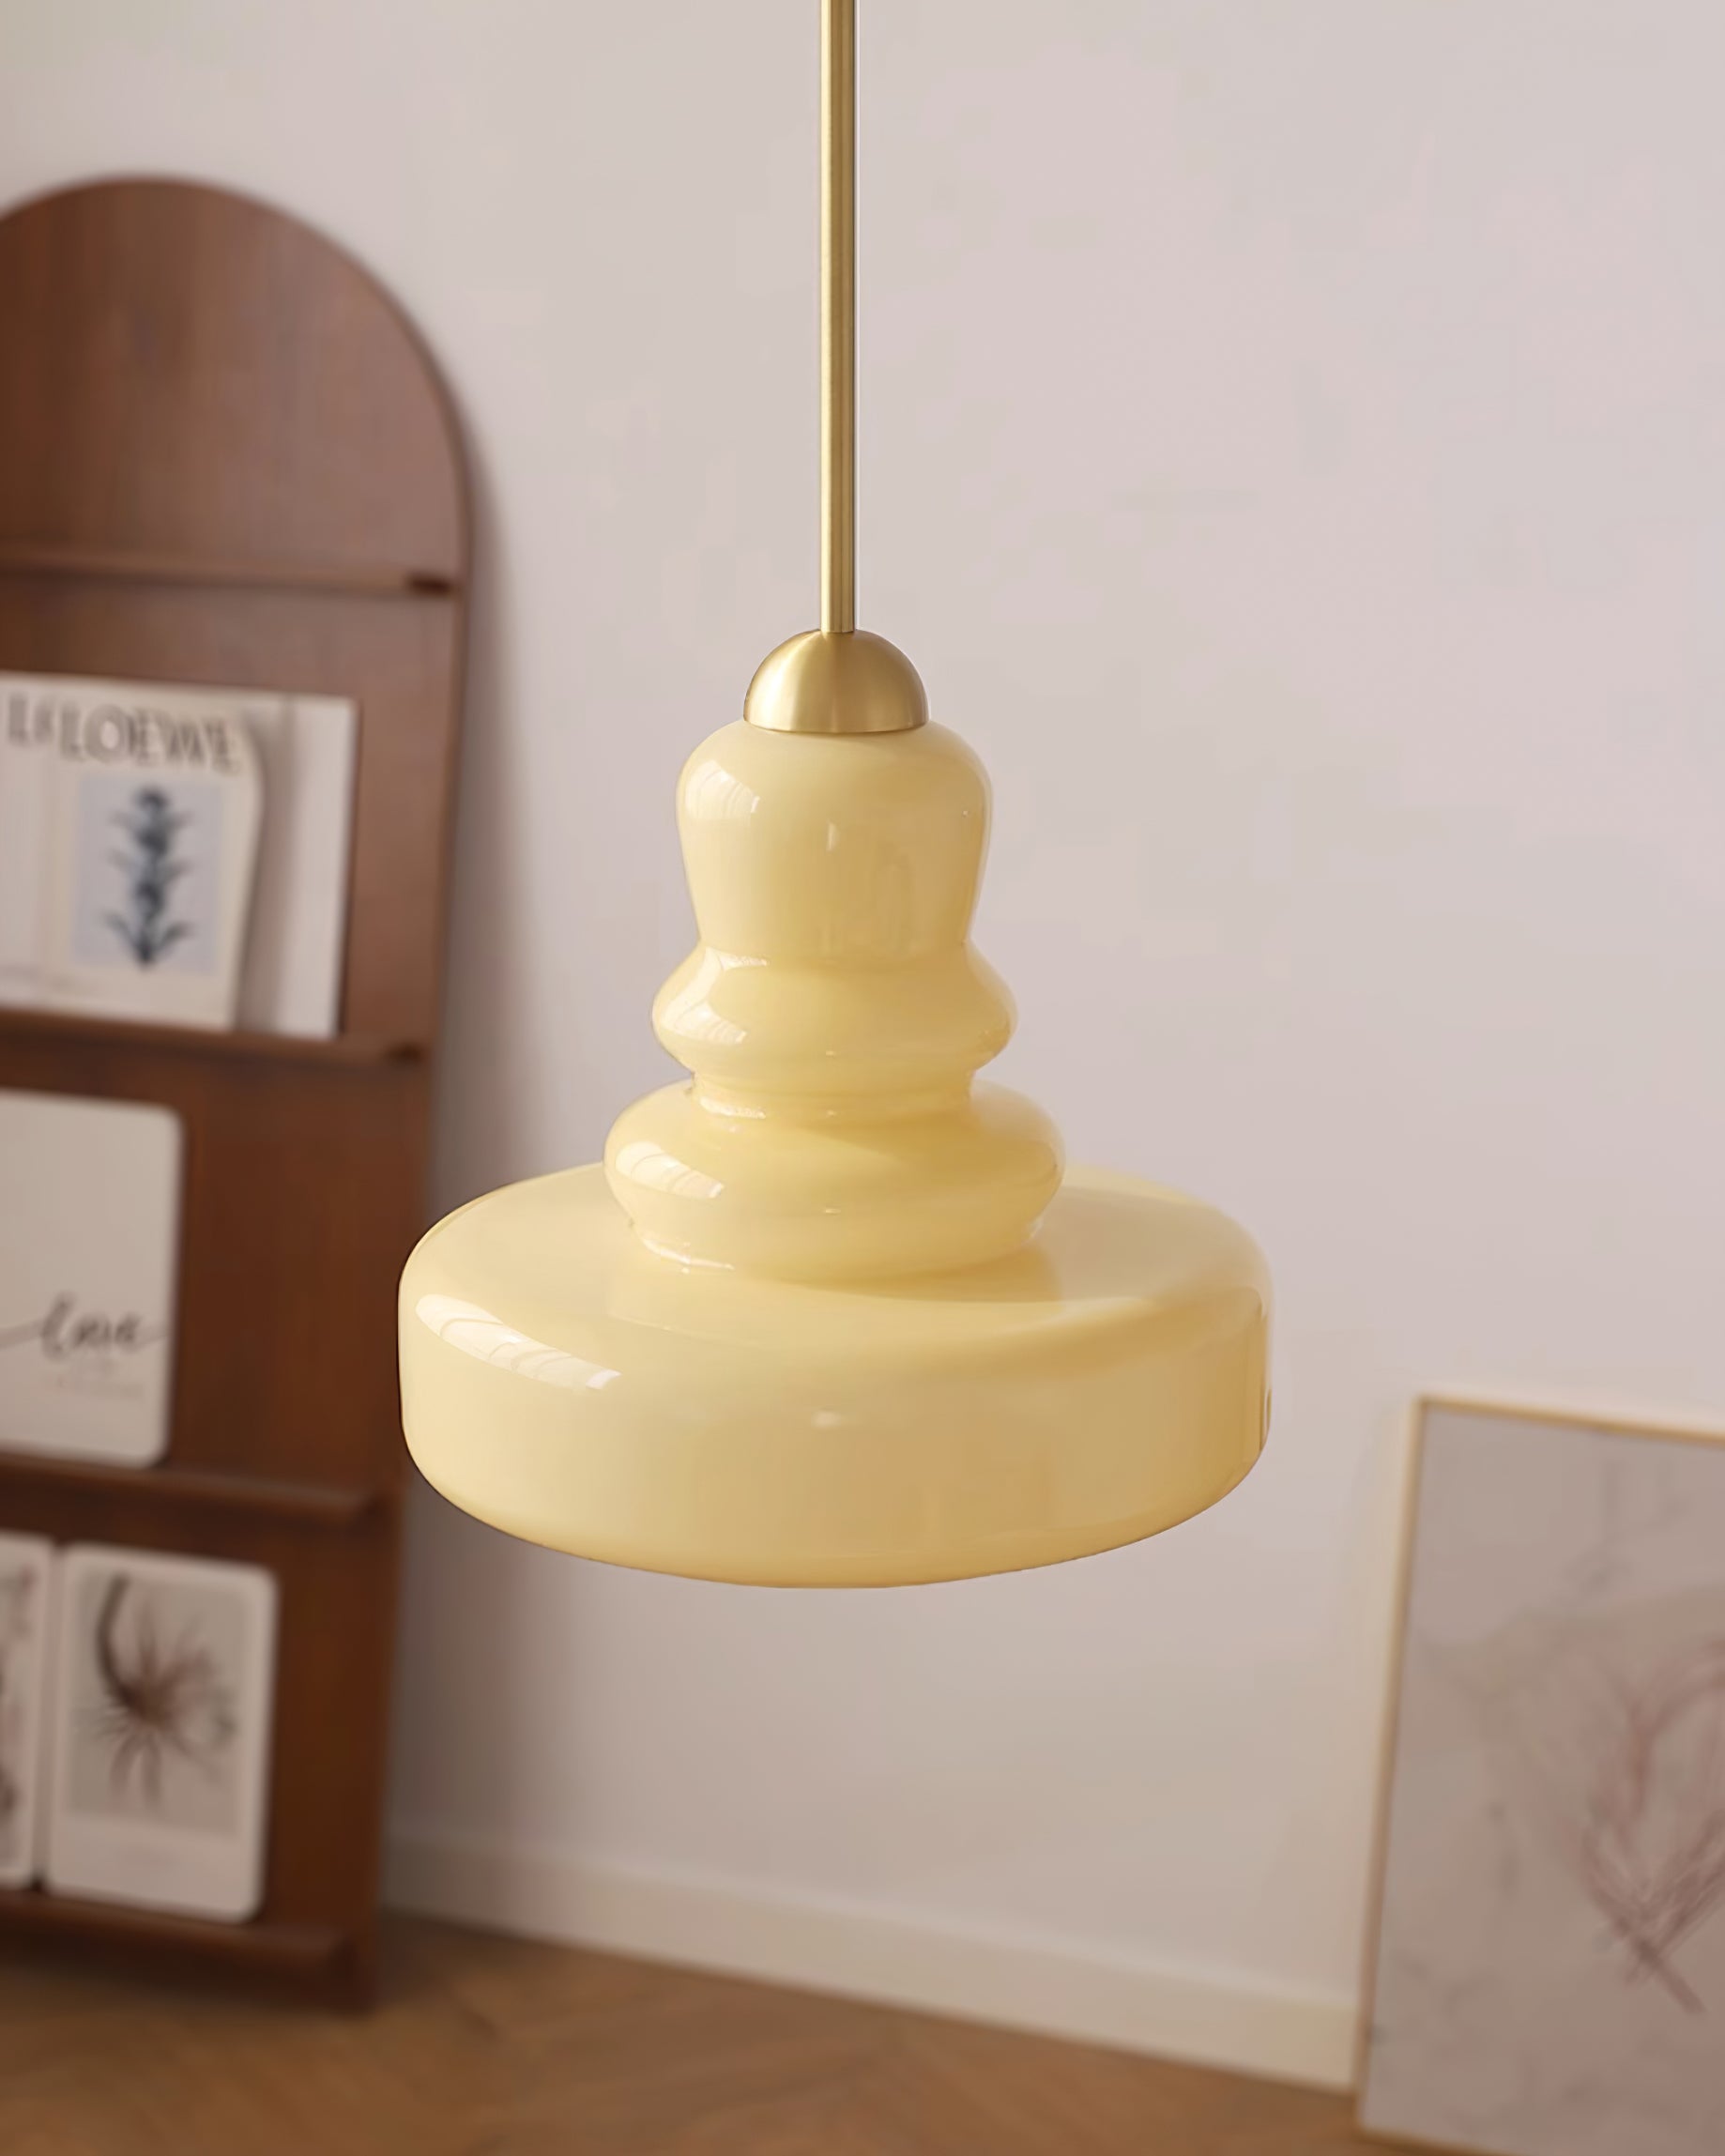 Putzer Pendant Lamp 11.8″